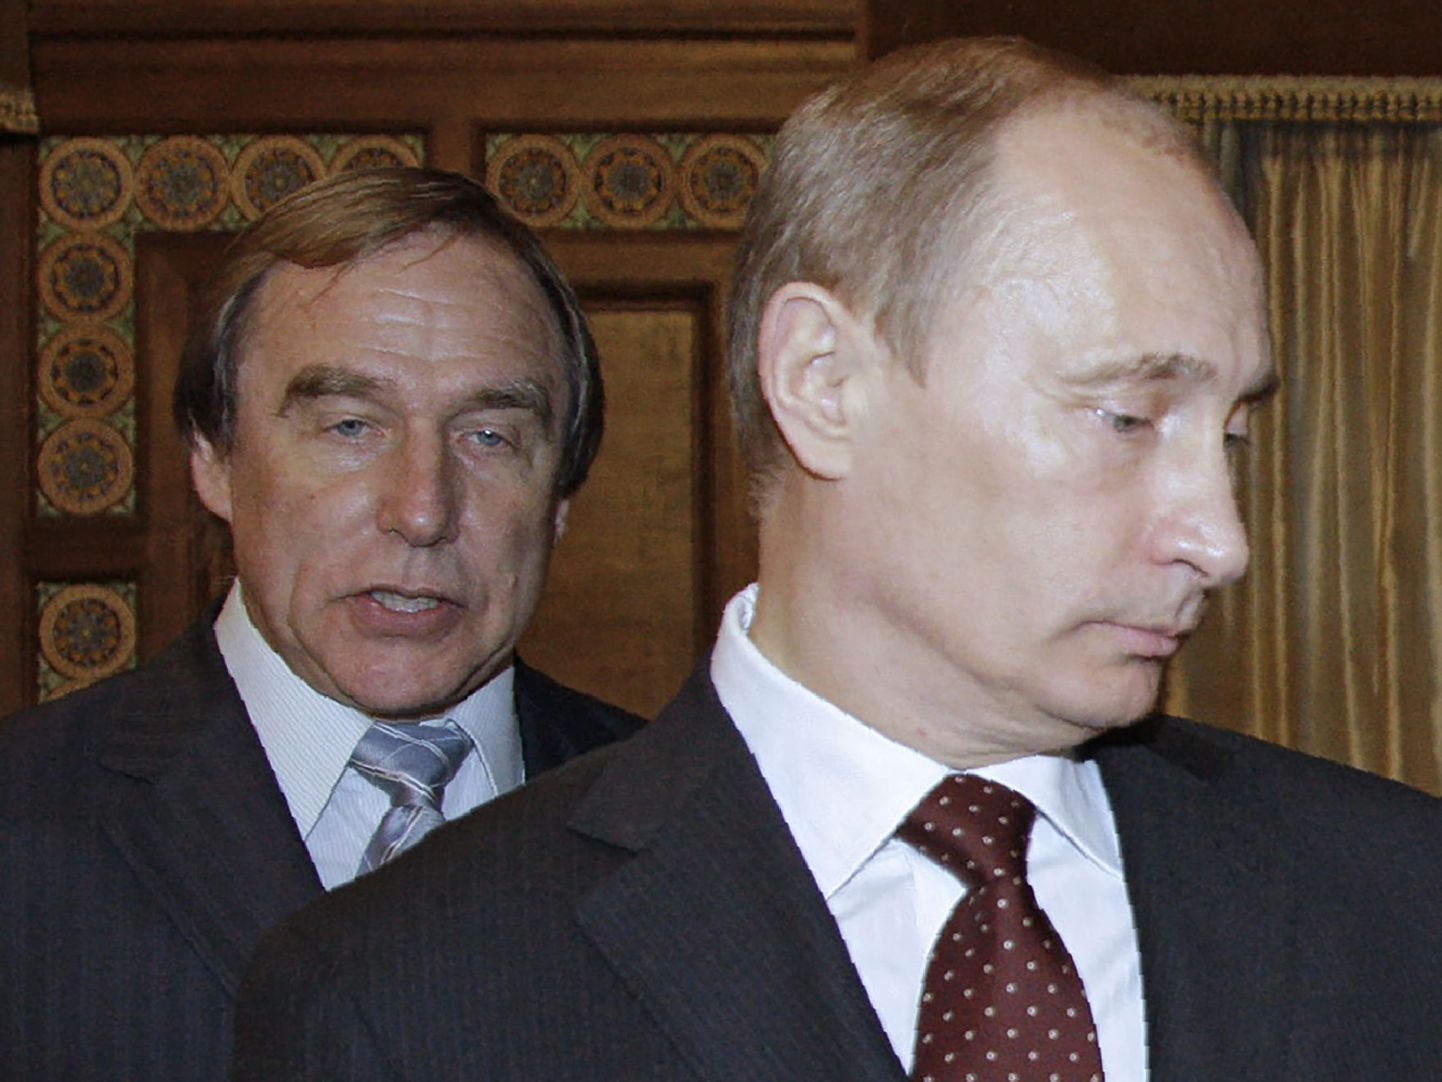 Vladimir Putin ja tema lähedasemaid sõpru, tšellomängija Sergei Roldugin. Mõlemat mainitakse dokumentides korduvalt.